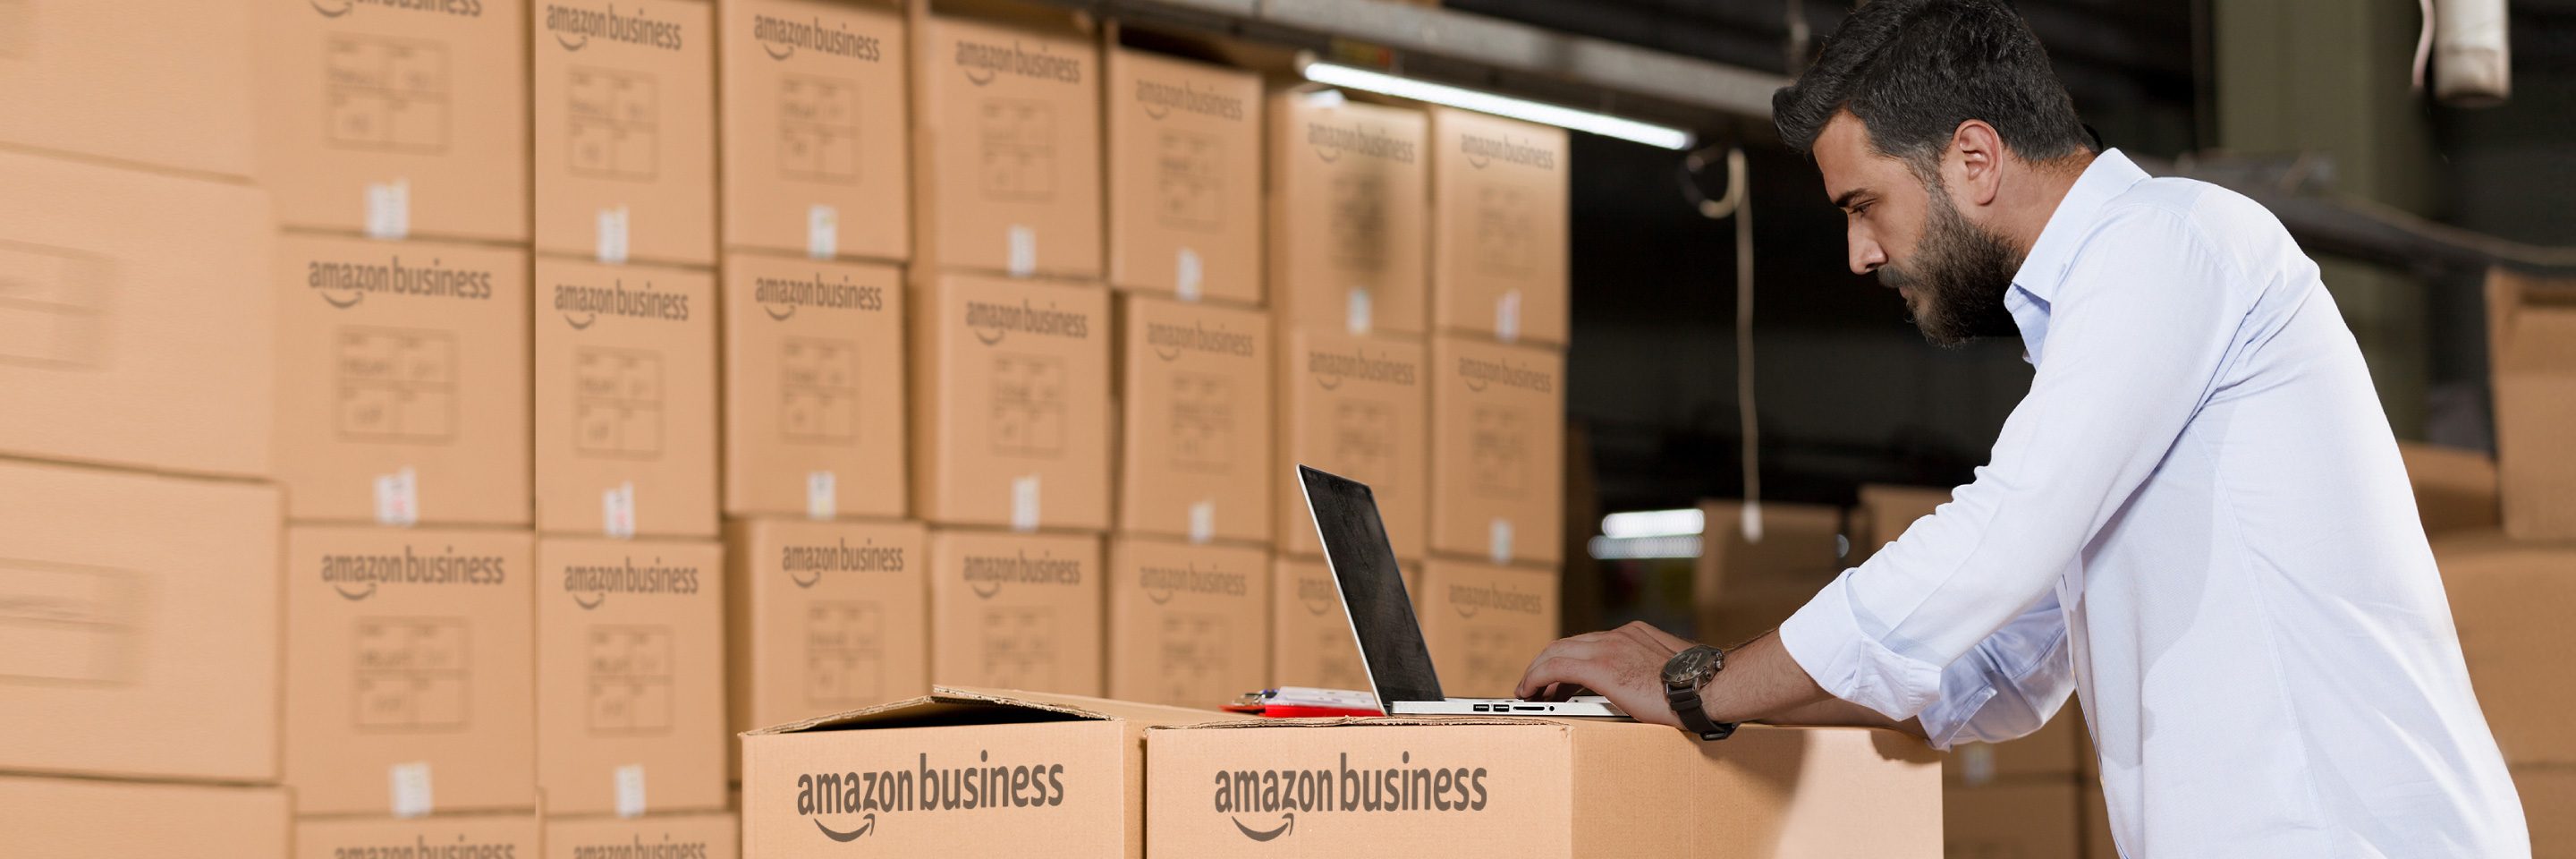 Reshape Buying at Amazon Business Online Wholesale Market	